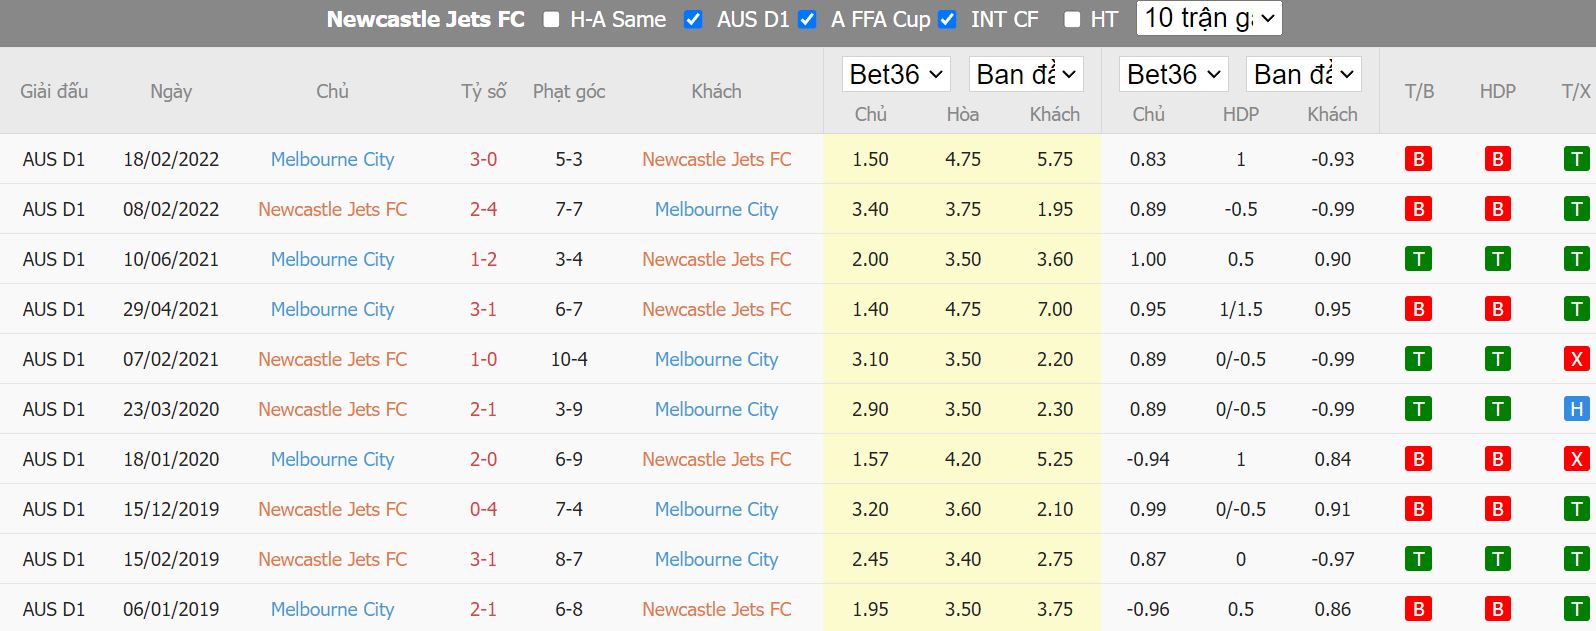 Thành tích đối đầu gần đây của Newcastle Jets FC và Melbourne City - A League